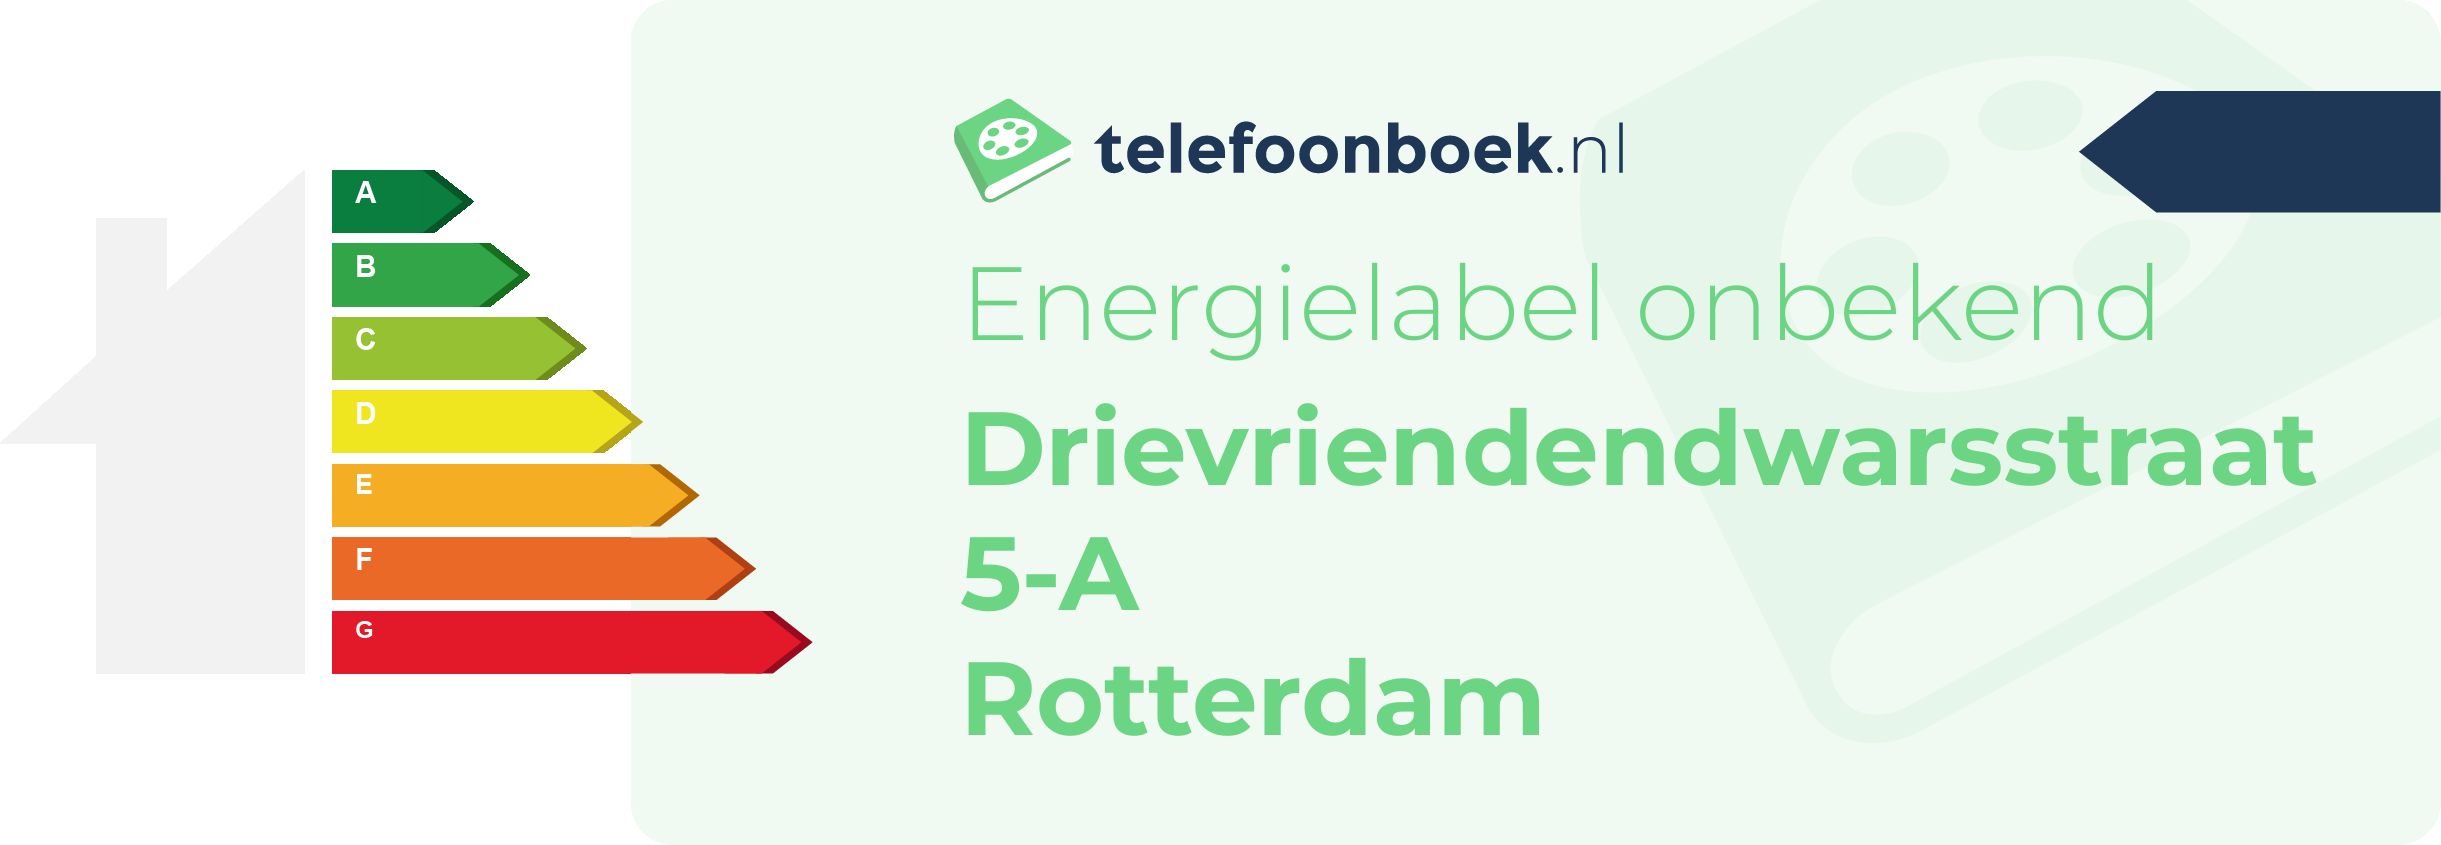 Energielabel Drievriendendwarsstraat 5-A Rotterdam